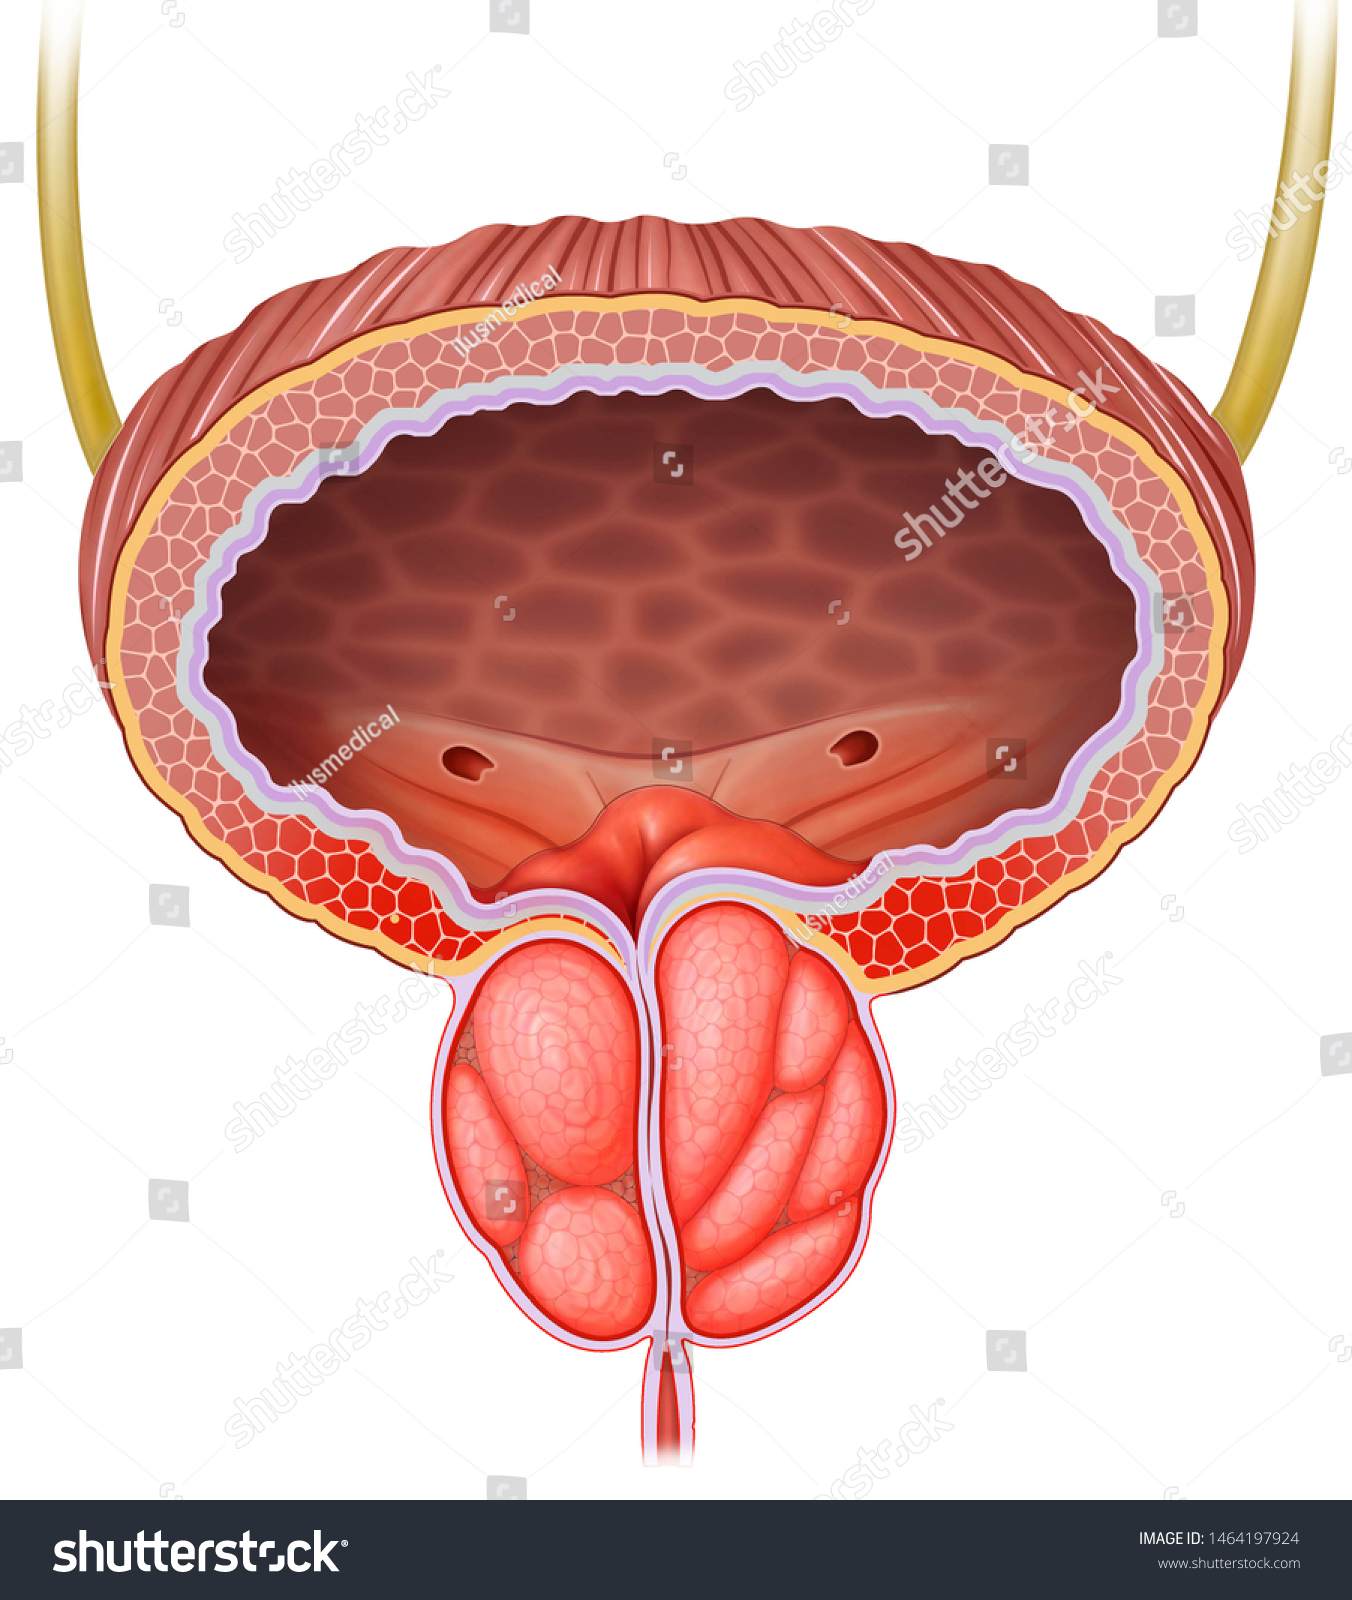 Простата крупным планом. Предстательная железа, Prostata. Аденома простаты анатомия. Простата и предстательная железа. Простата у мужчин.